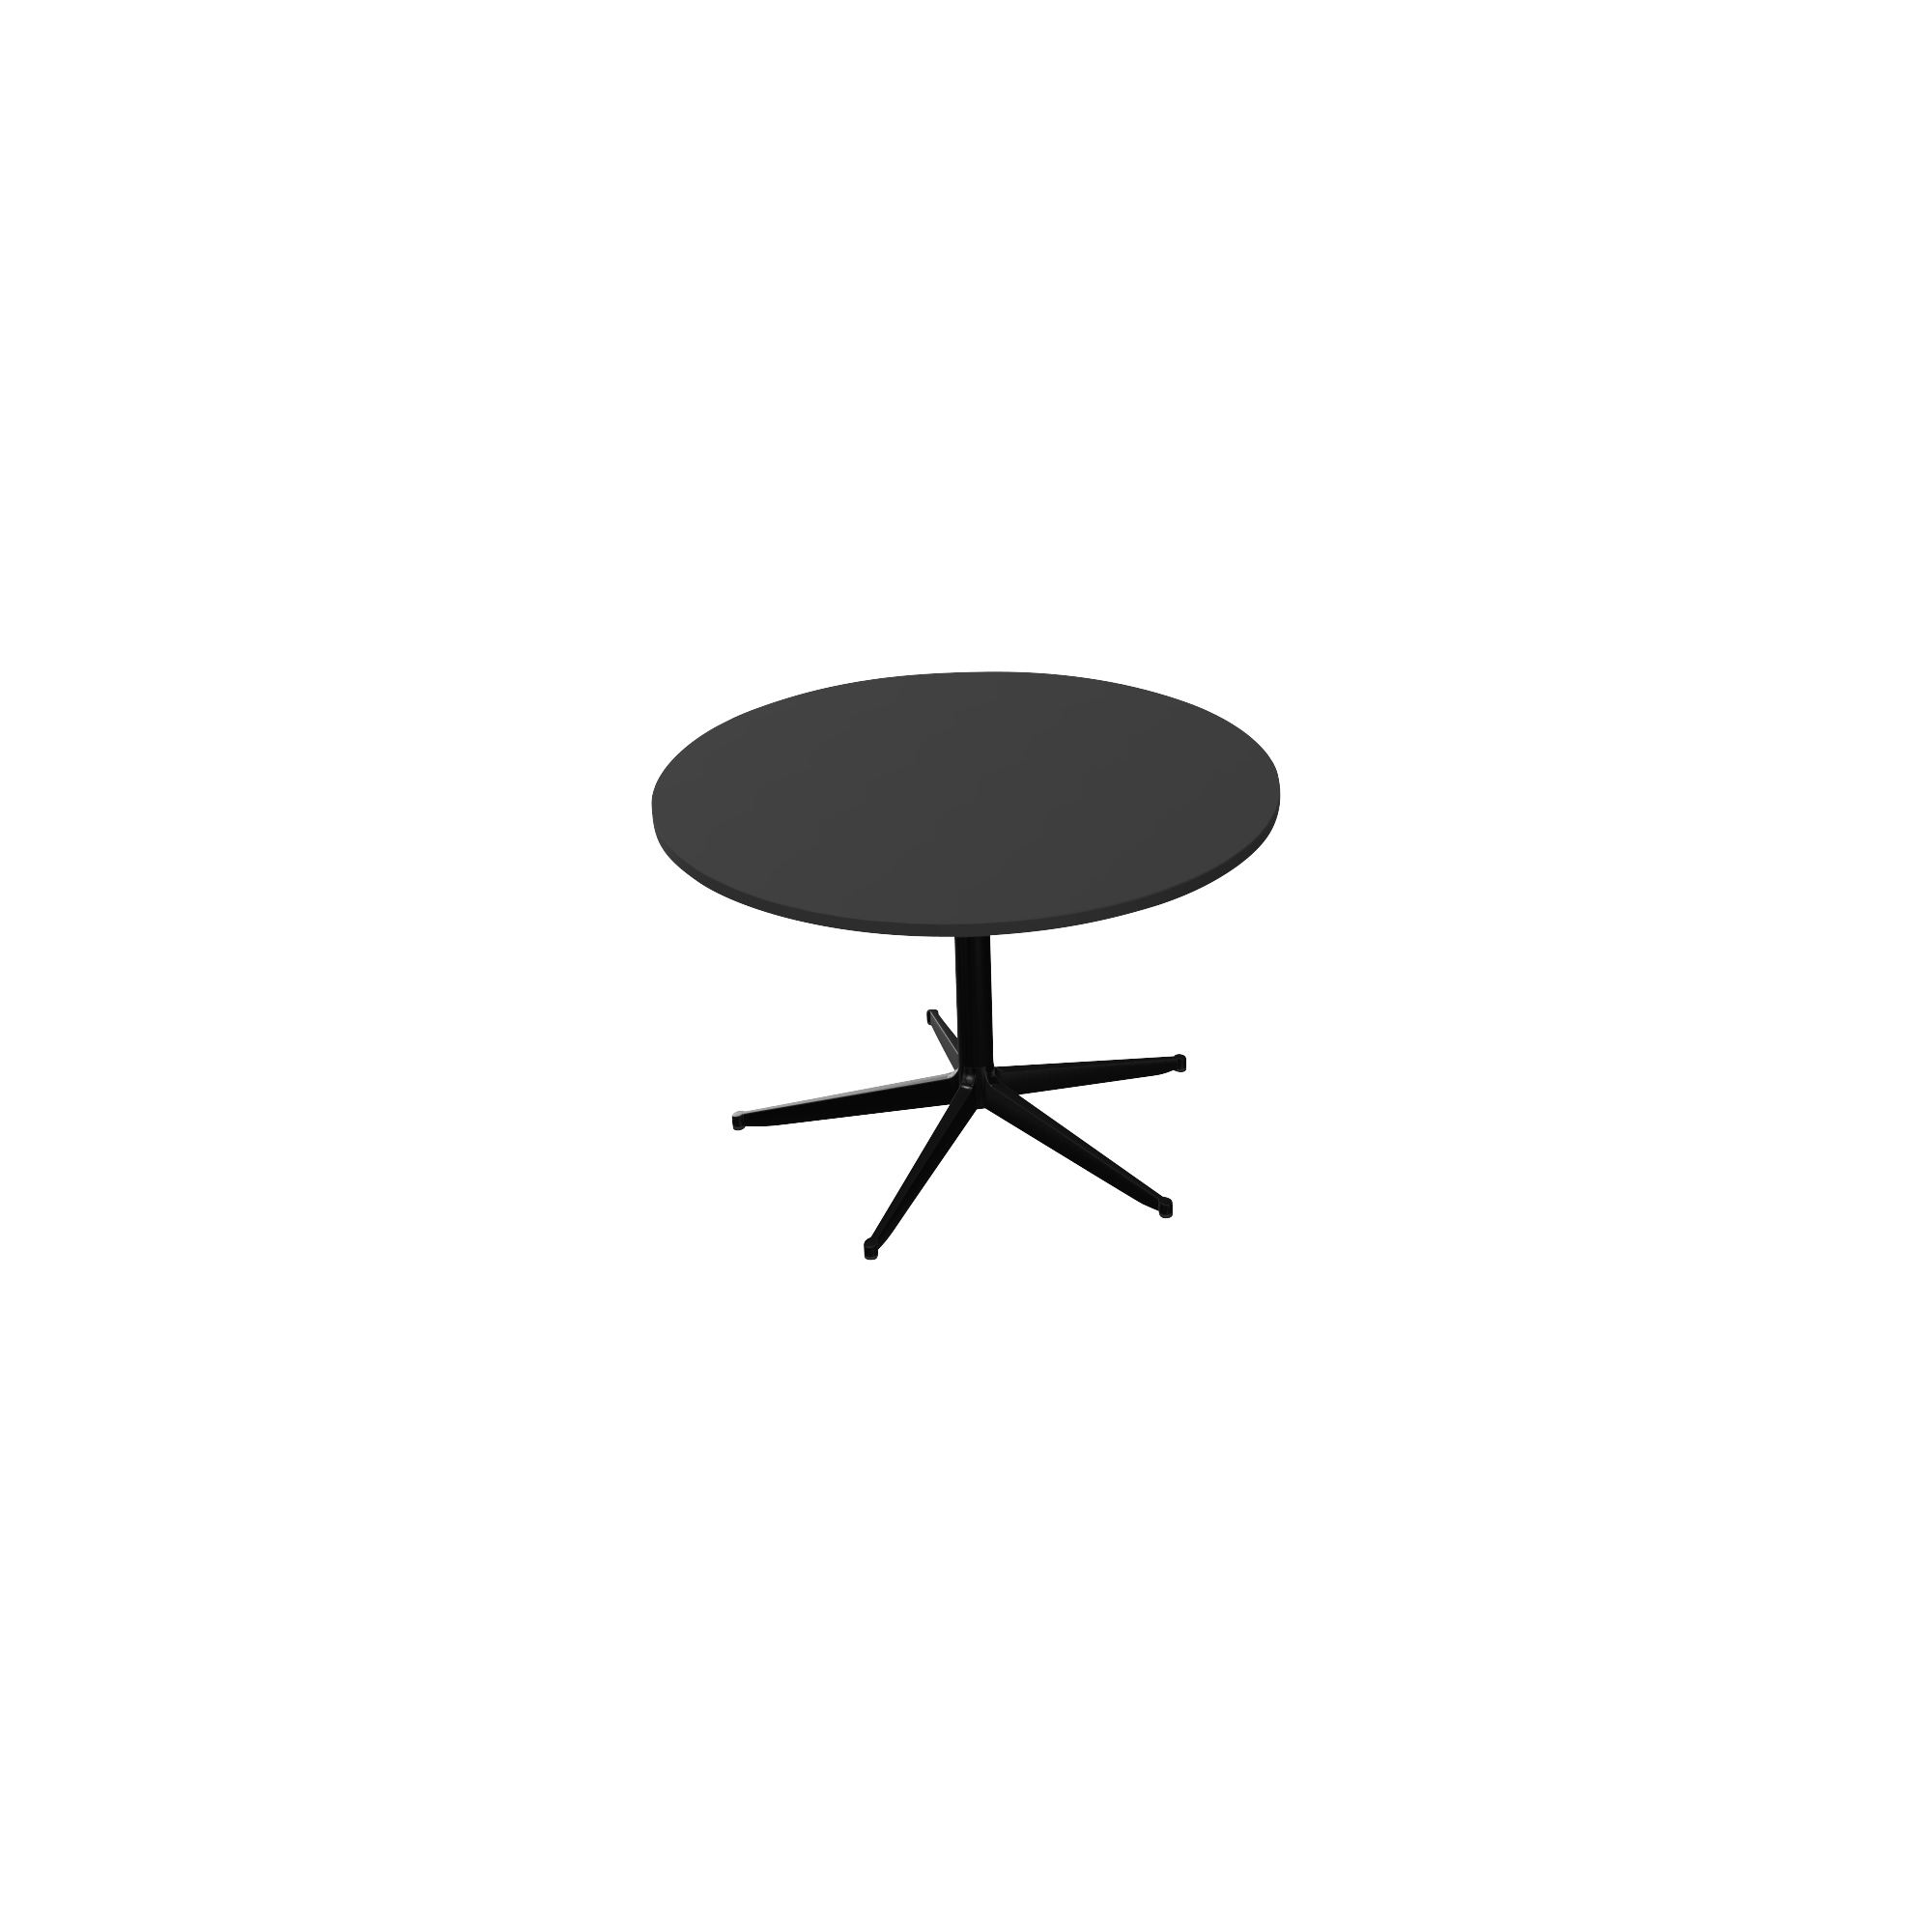 A black circular table with a pedestal leg